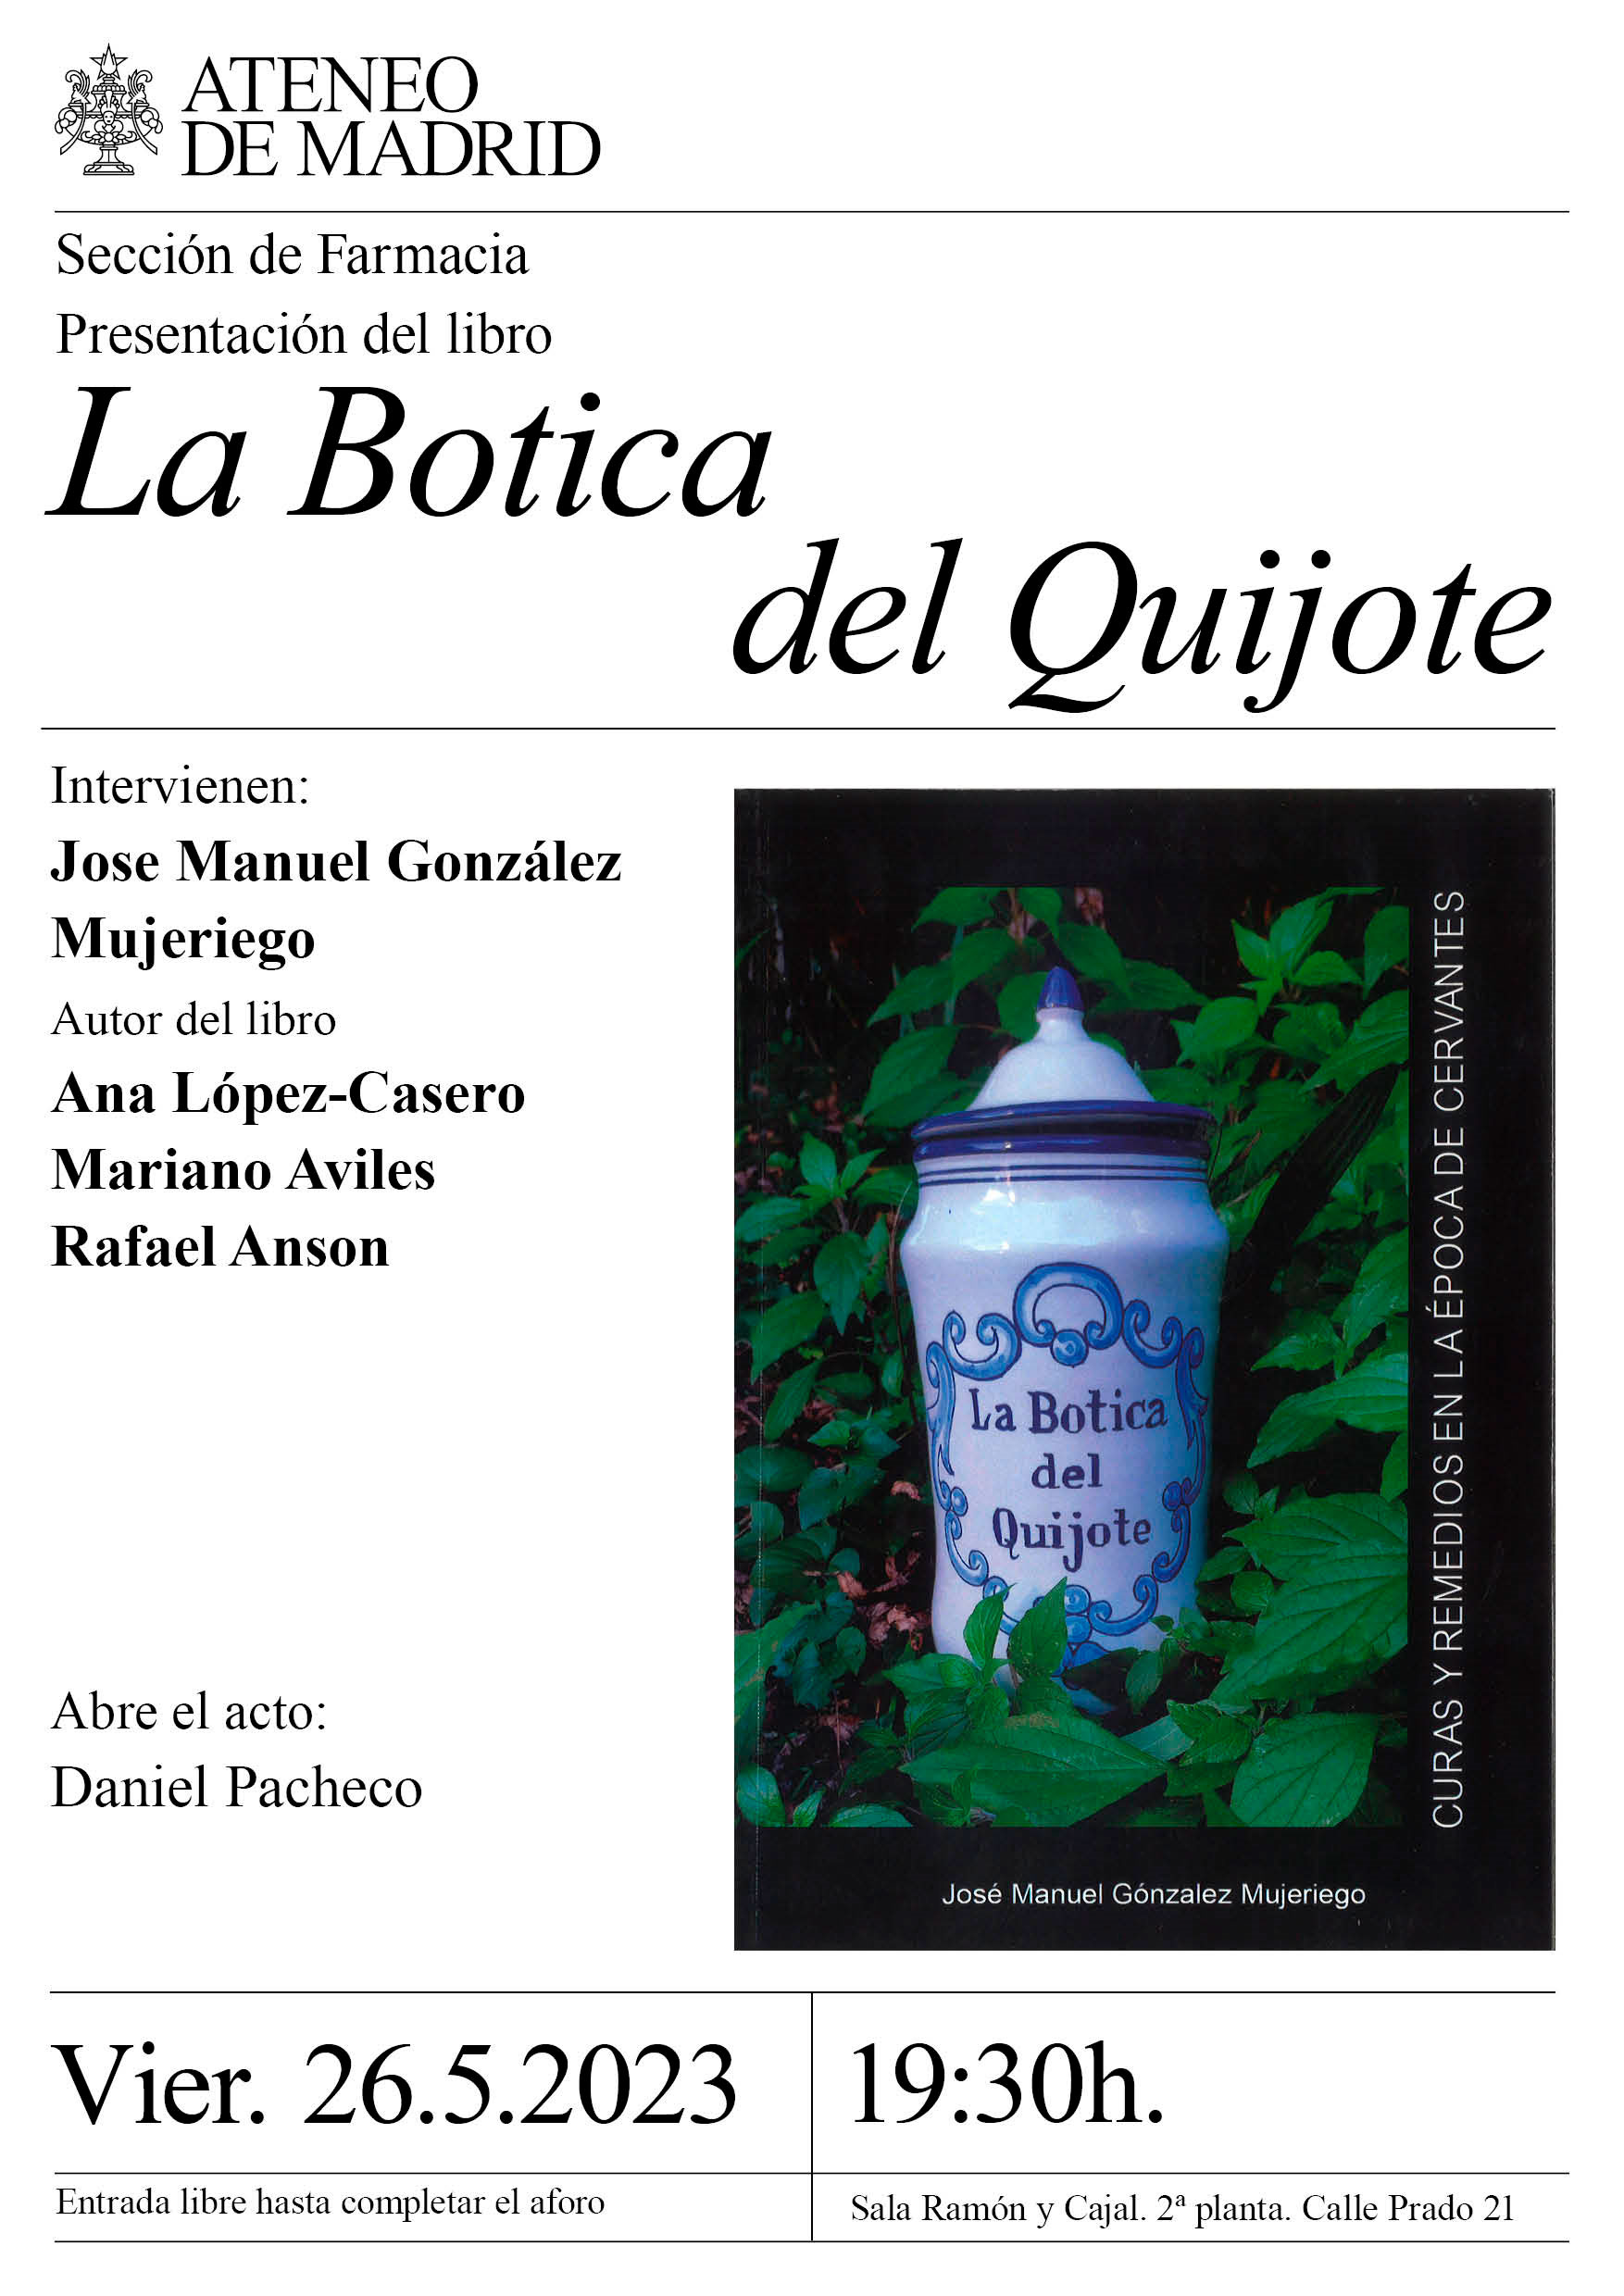 Presentación "La Botica del Quijote" en el Ateneo de Madrid